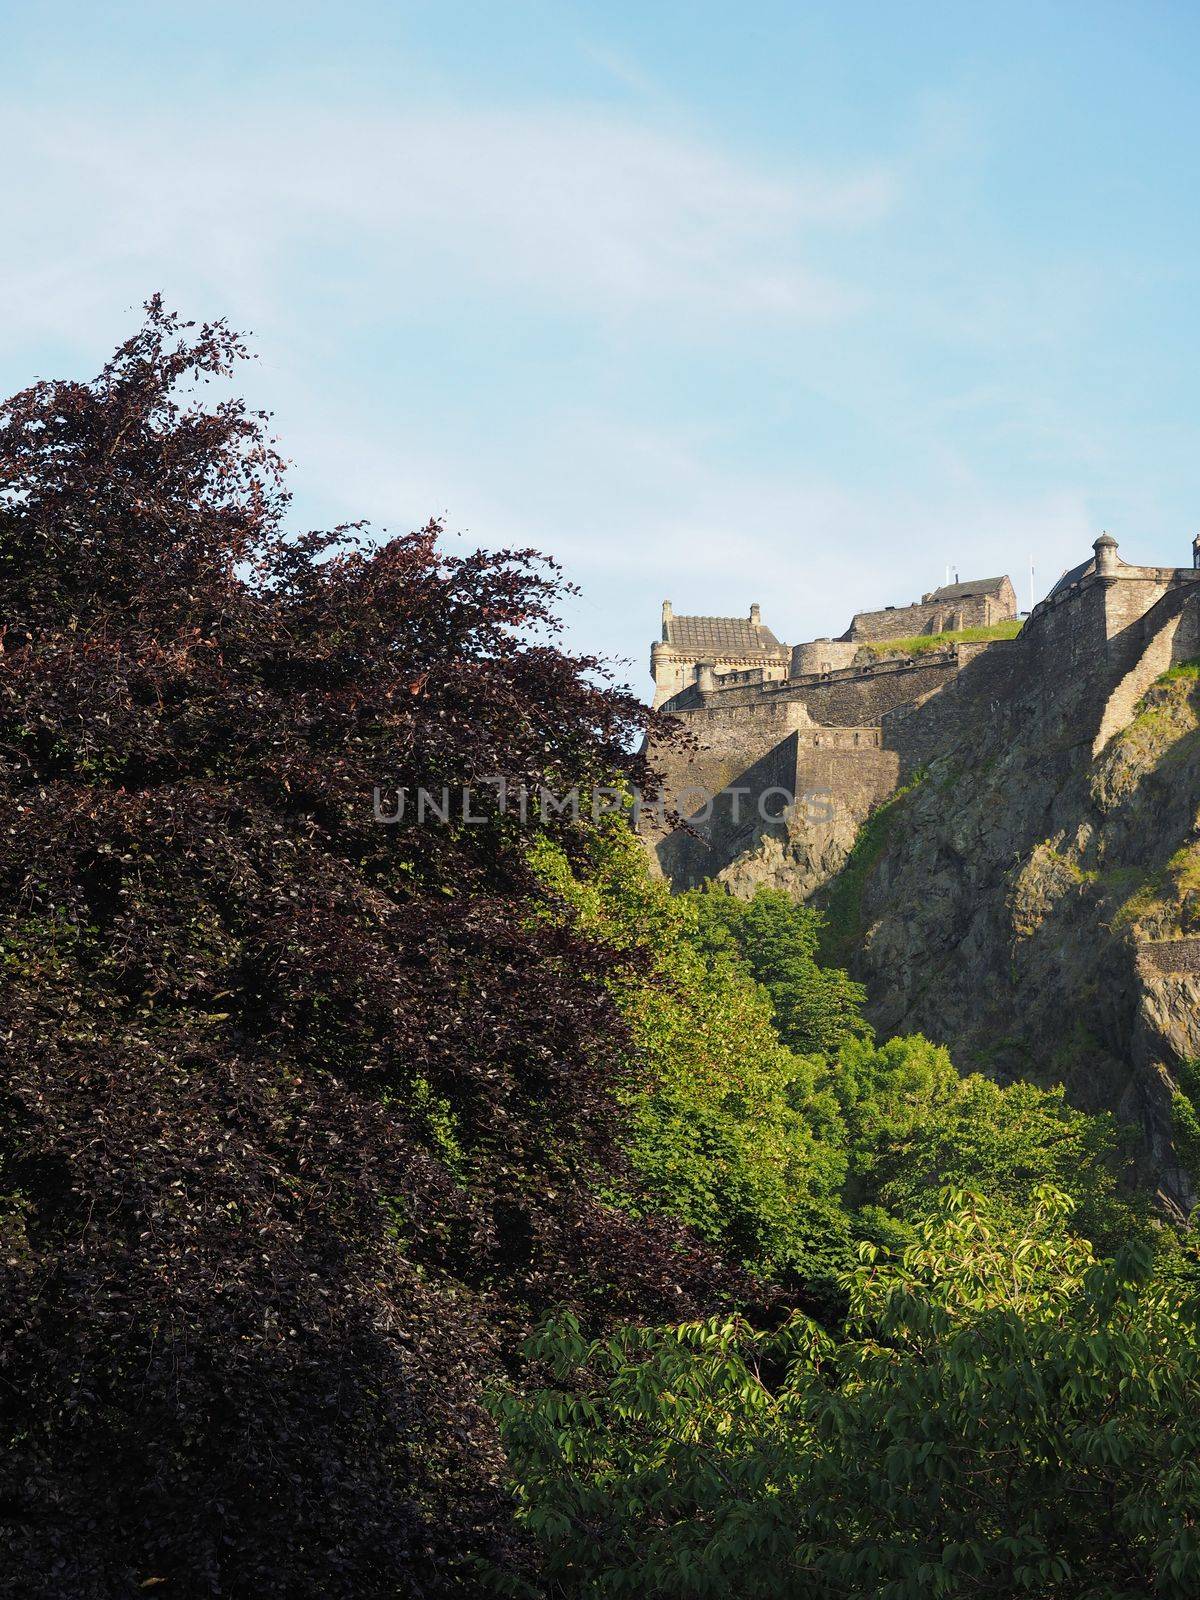 Edinburgh castle in Scotland by claudiodivizia